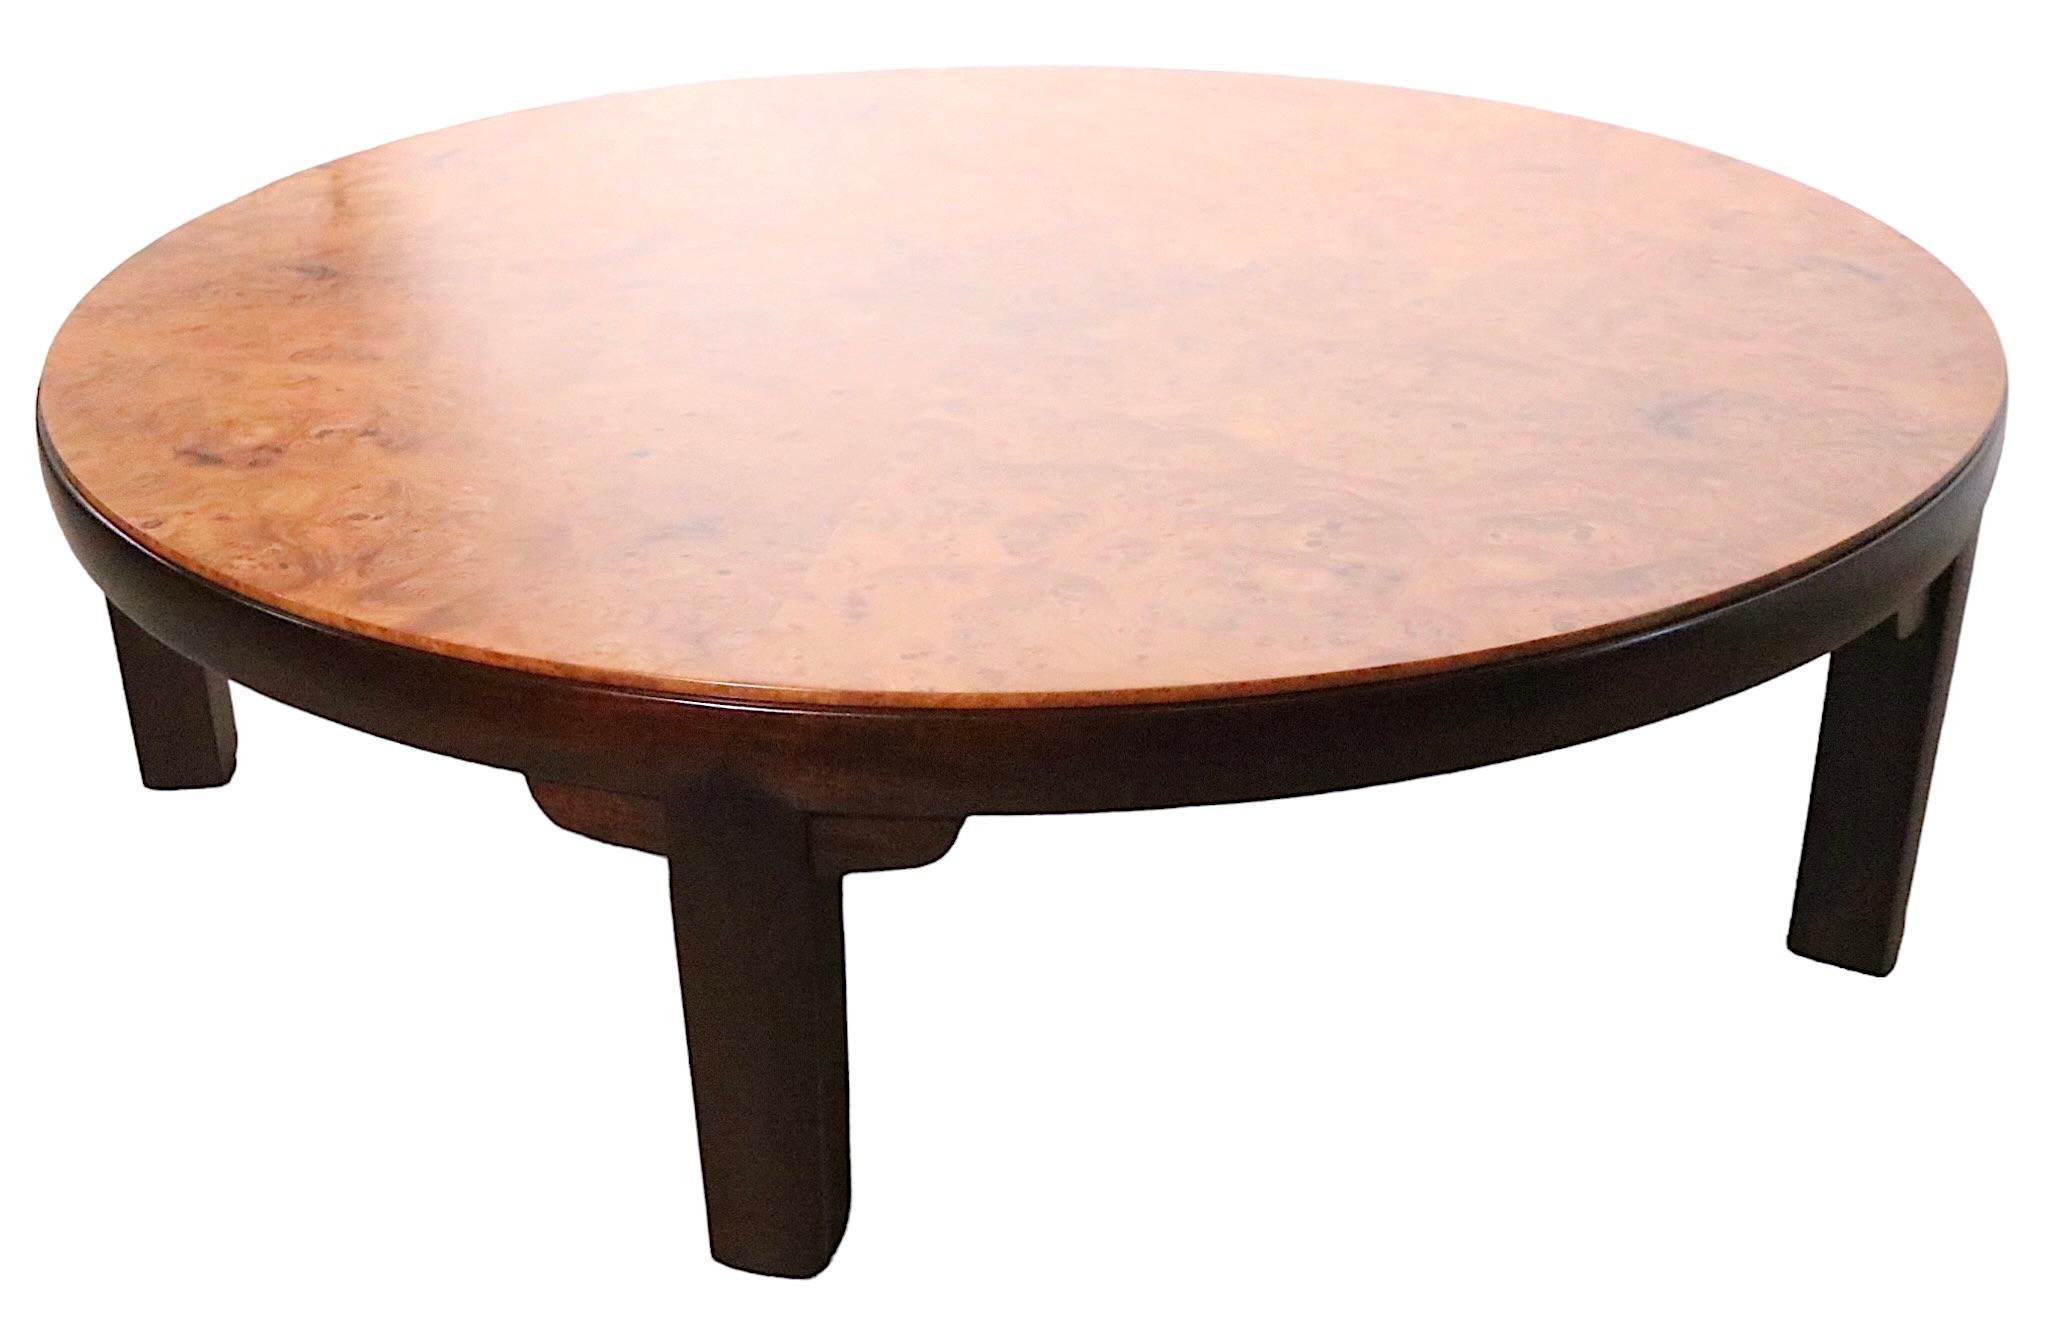 Seltene Mitte des Jahrhunderts  Couchtisch, entworfen von Edward Wormley für Dunbar. Der Tisch hat eine wunderschöne Platte aus blonder Karpatenwurzel auf einem Sockel aus dunklem Walnussholz. Der Tisch ist neu und professionell aufgearbeitet worden